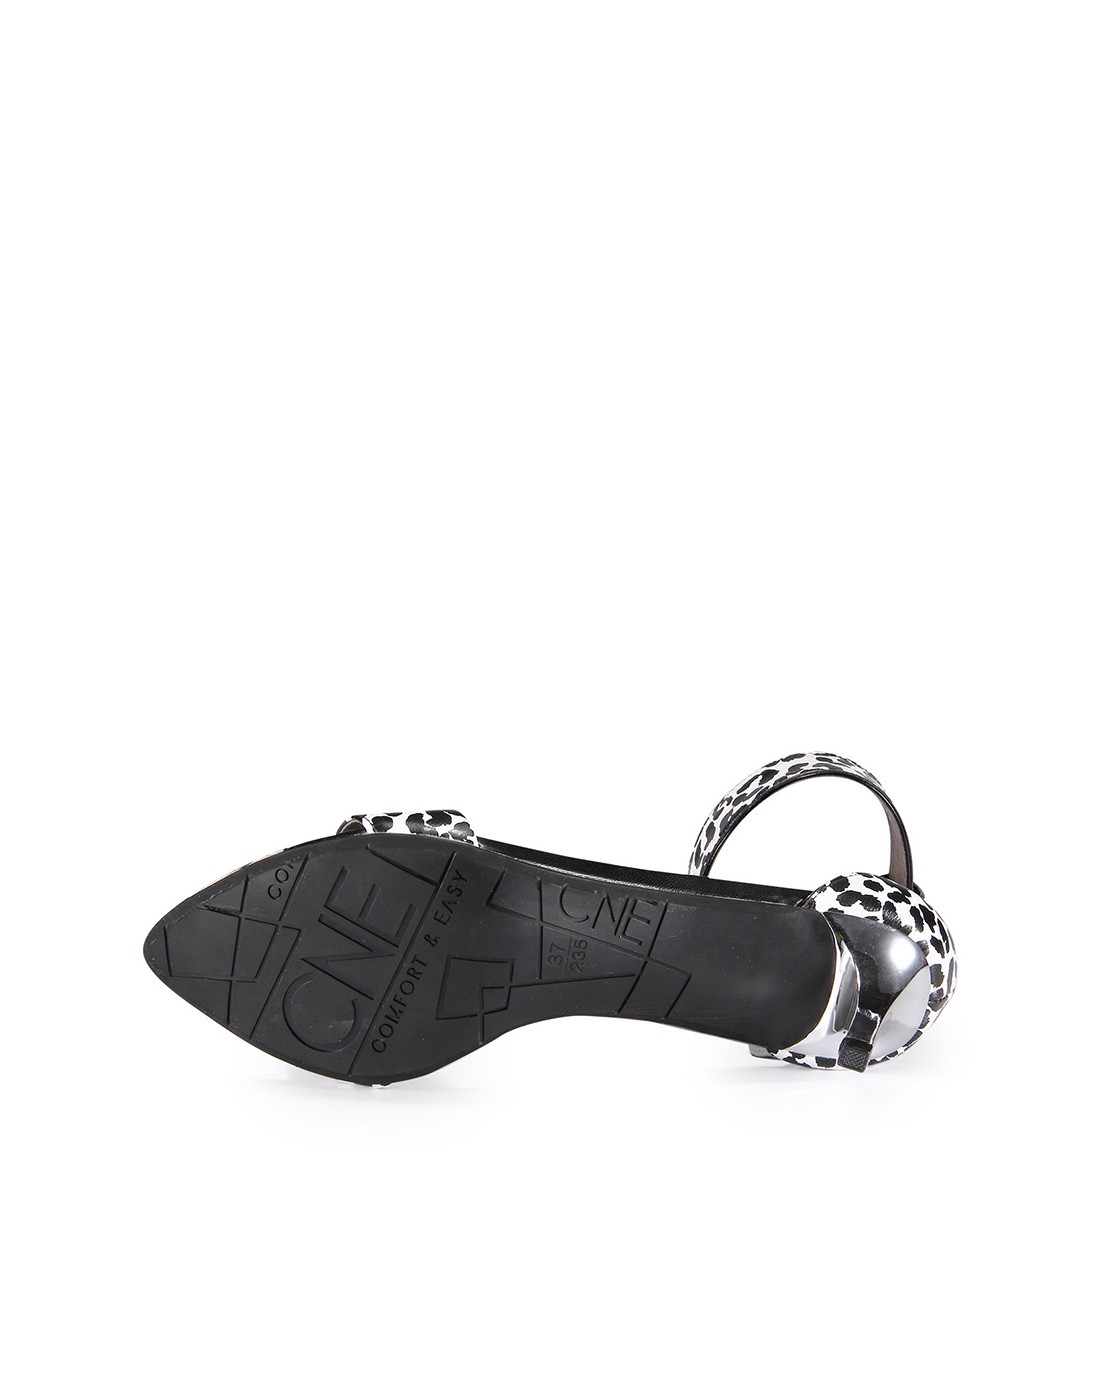 2015新品专柜同款黑白色性感豹纹金属凉鞋